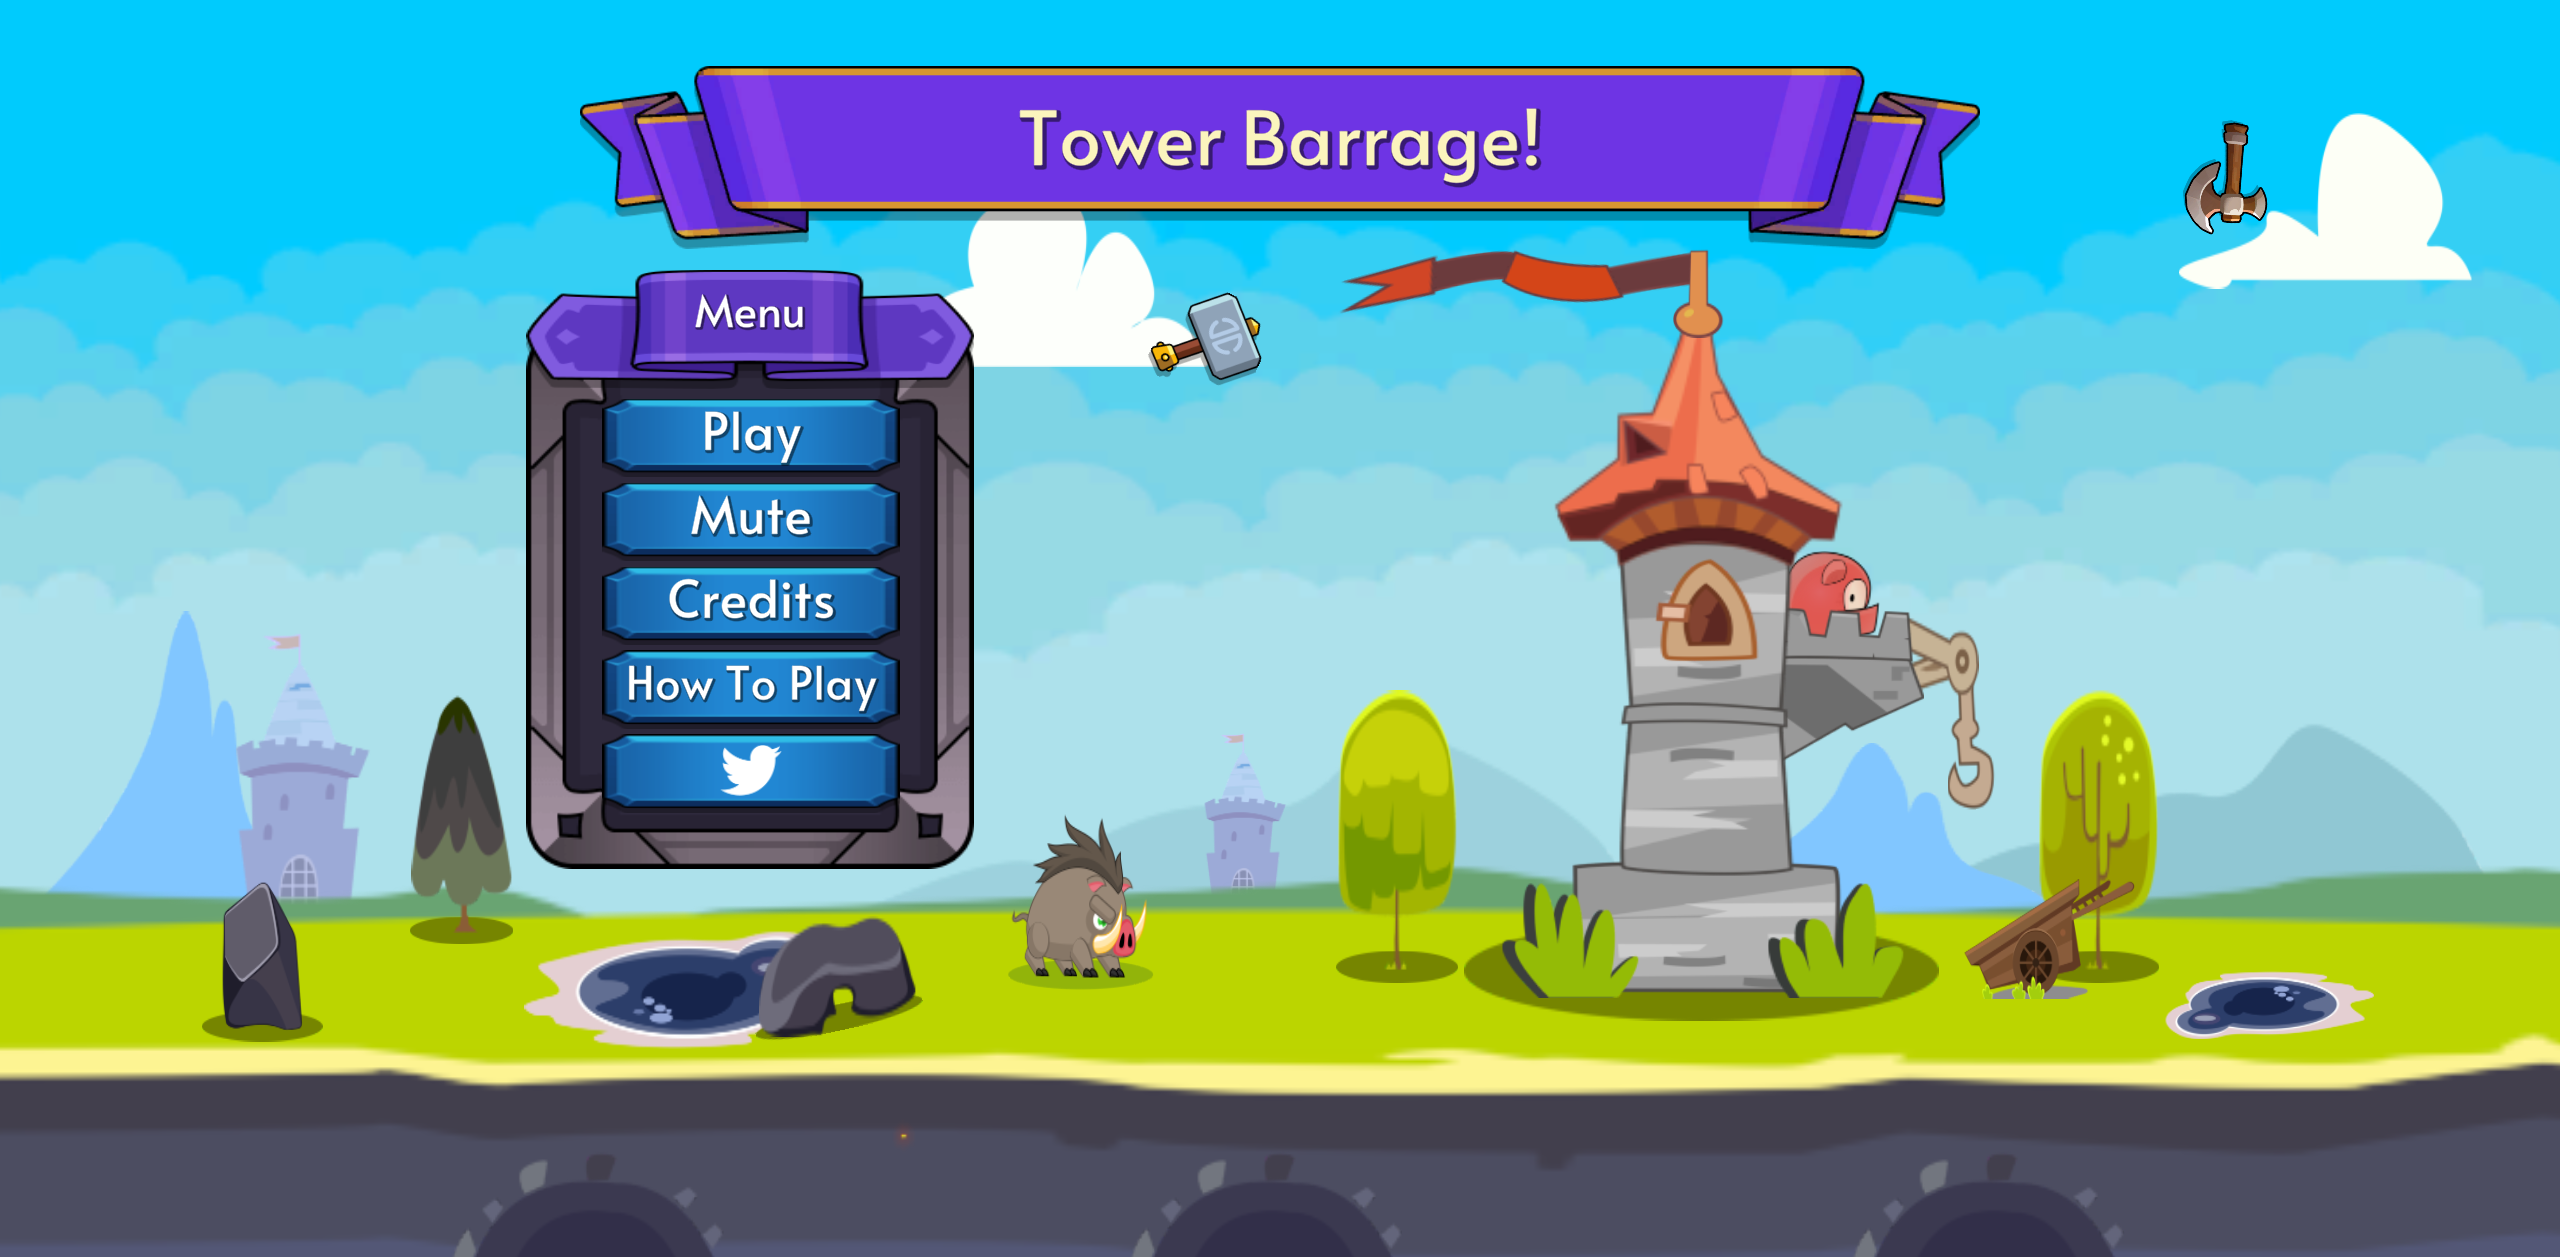 Tower Barrage